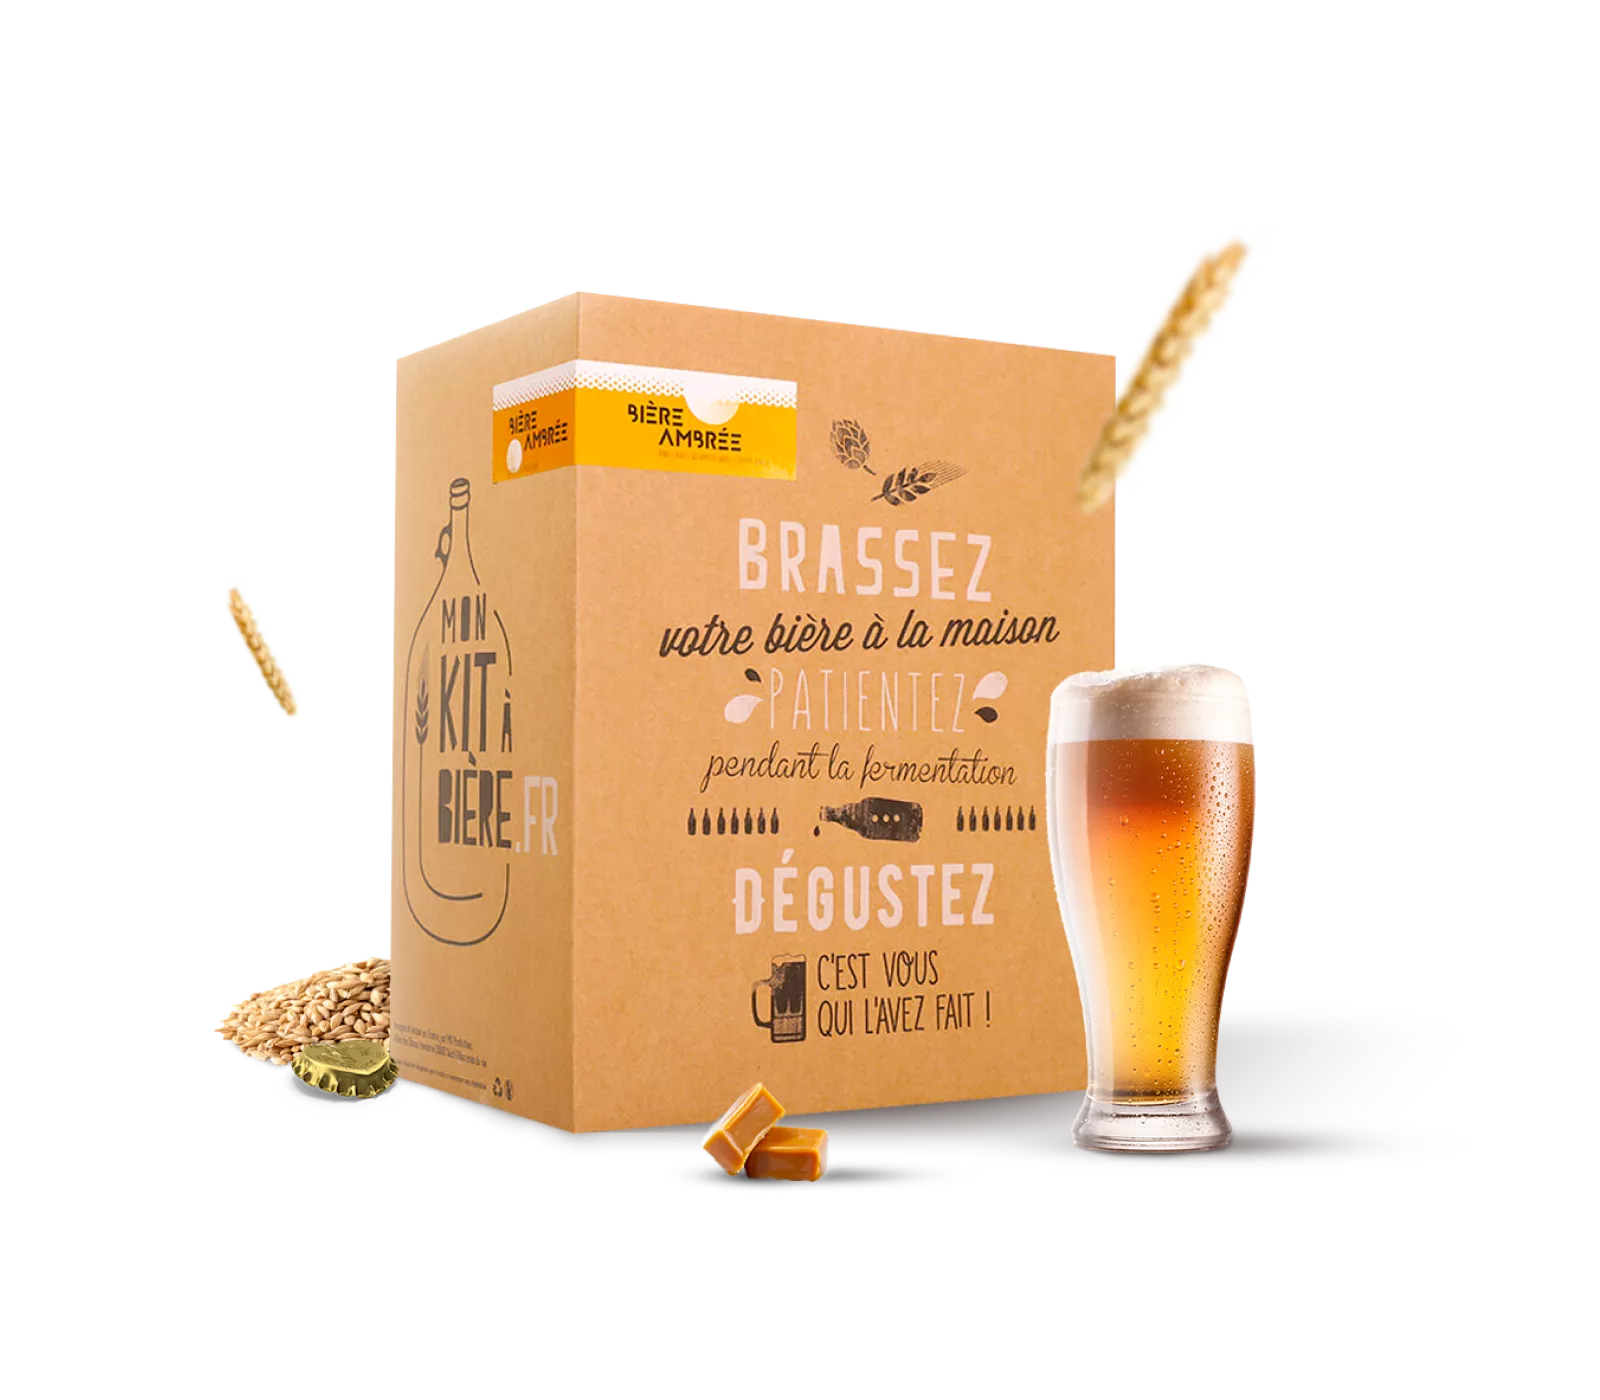 Kit complet de Brassage Artisanal Bière Ambrée 5 litres - Mon Kit à Bière -  Kit de brassage pour réaliser une bonne bière maison